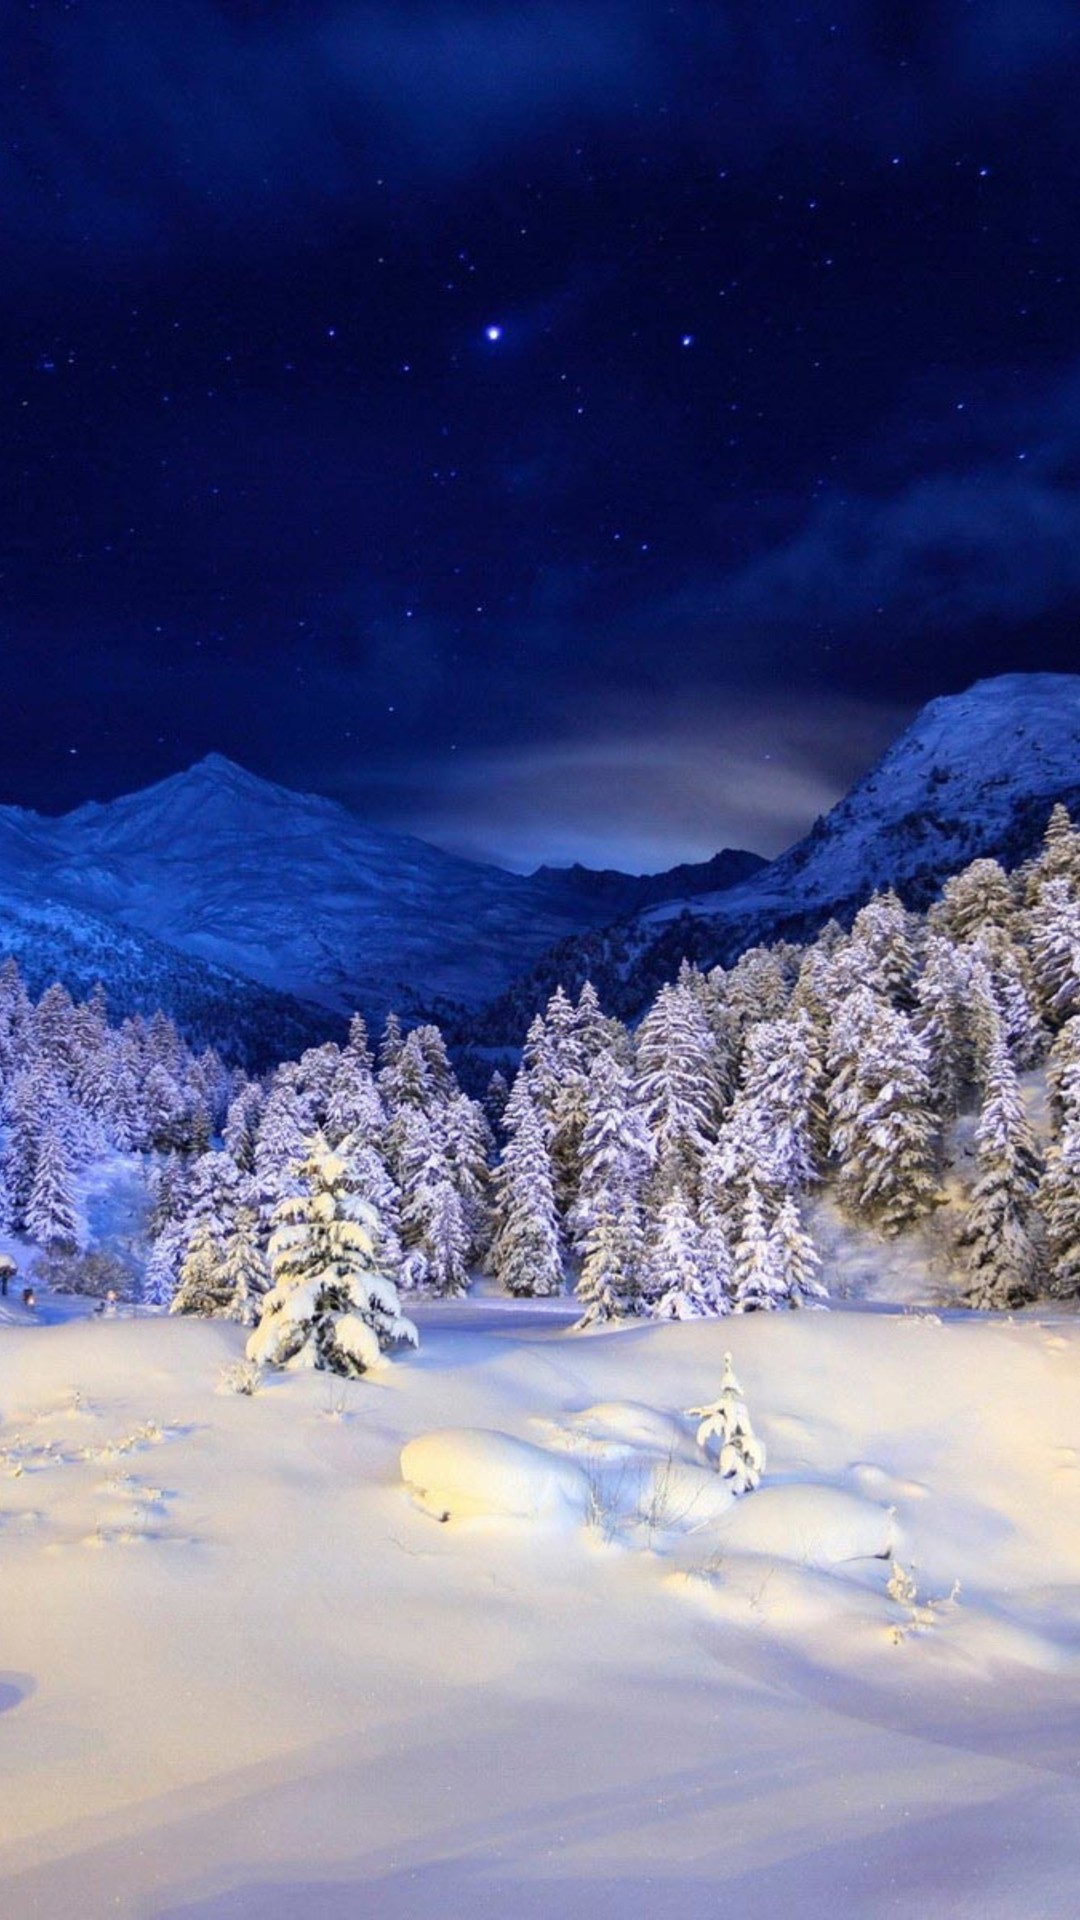 720x1280 fonds d'écran hd android,la nature,ciel,paysage naturel,neige,hiver